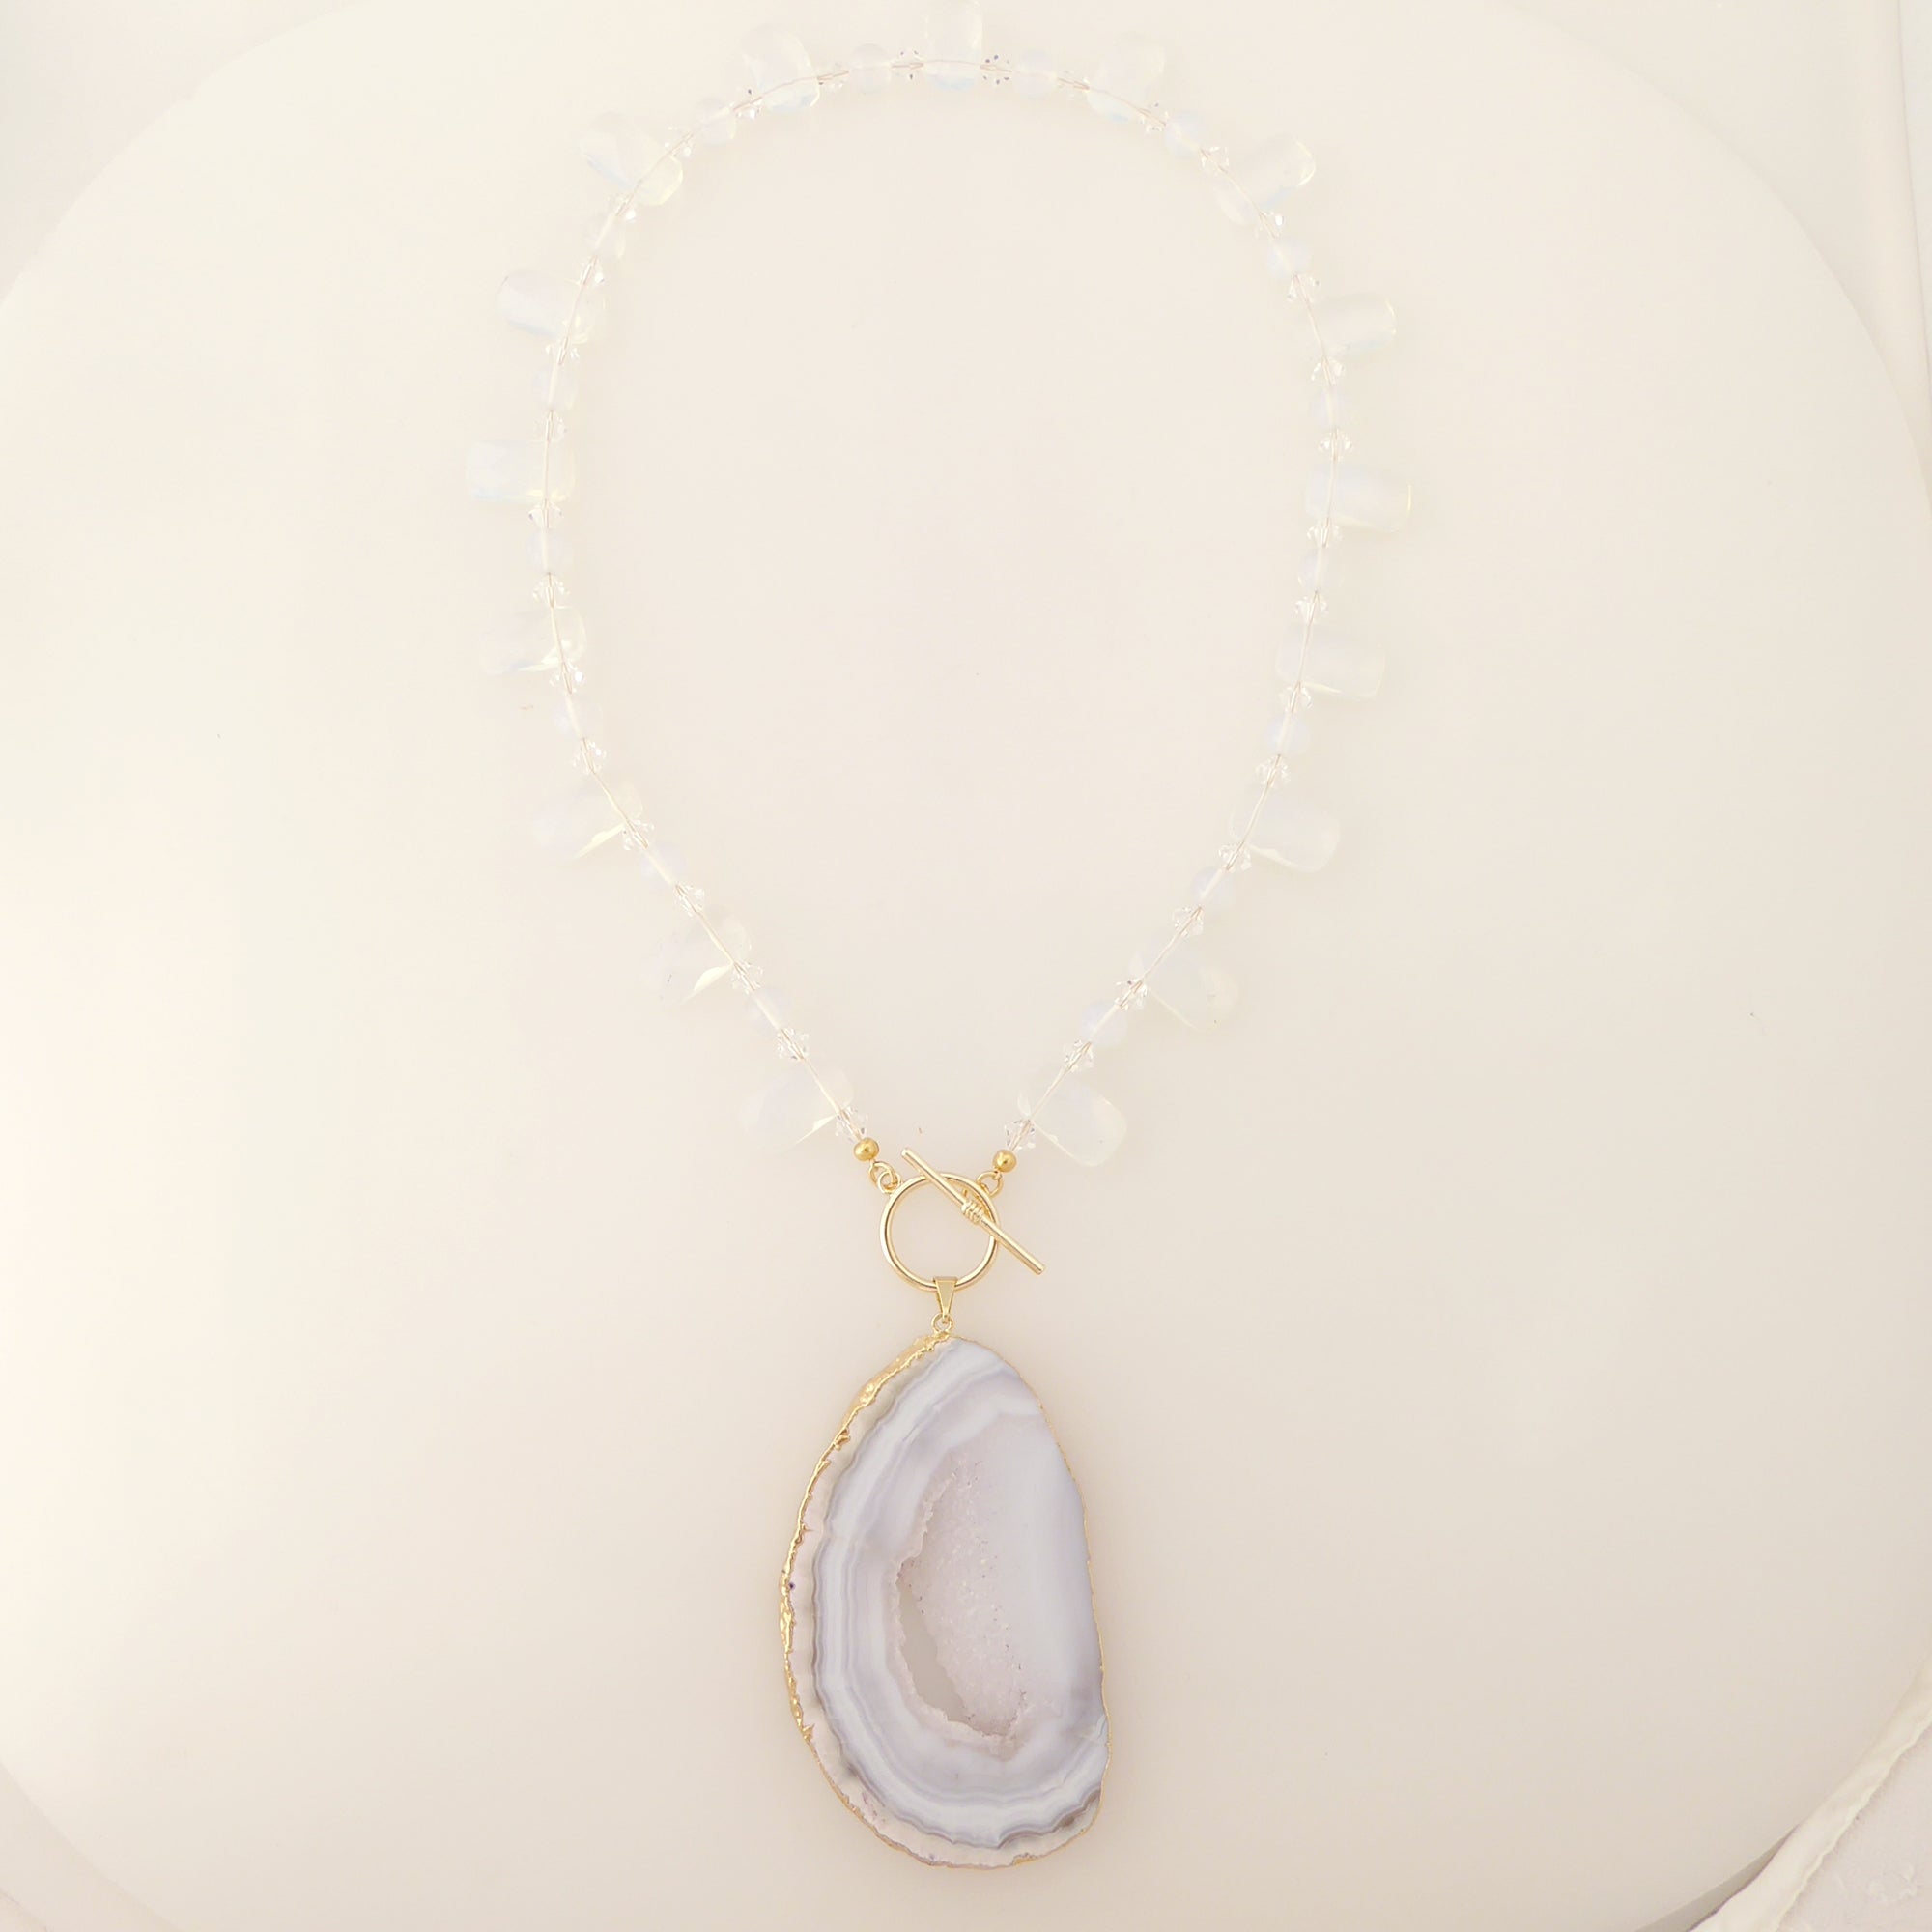    Dove gray agate slice necklace by Jenny Dayco 6